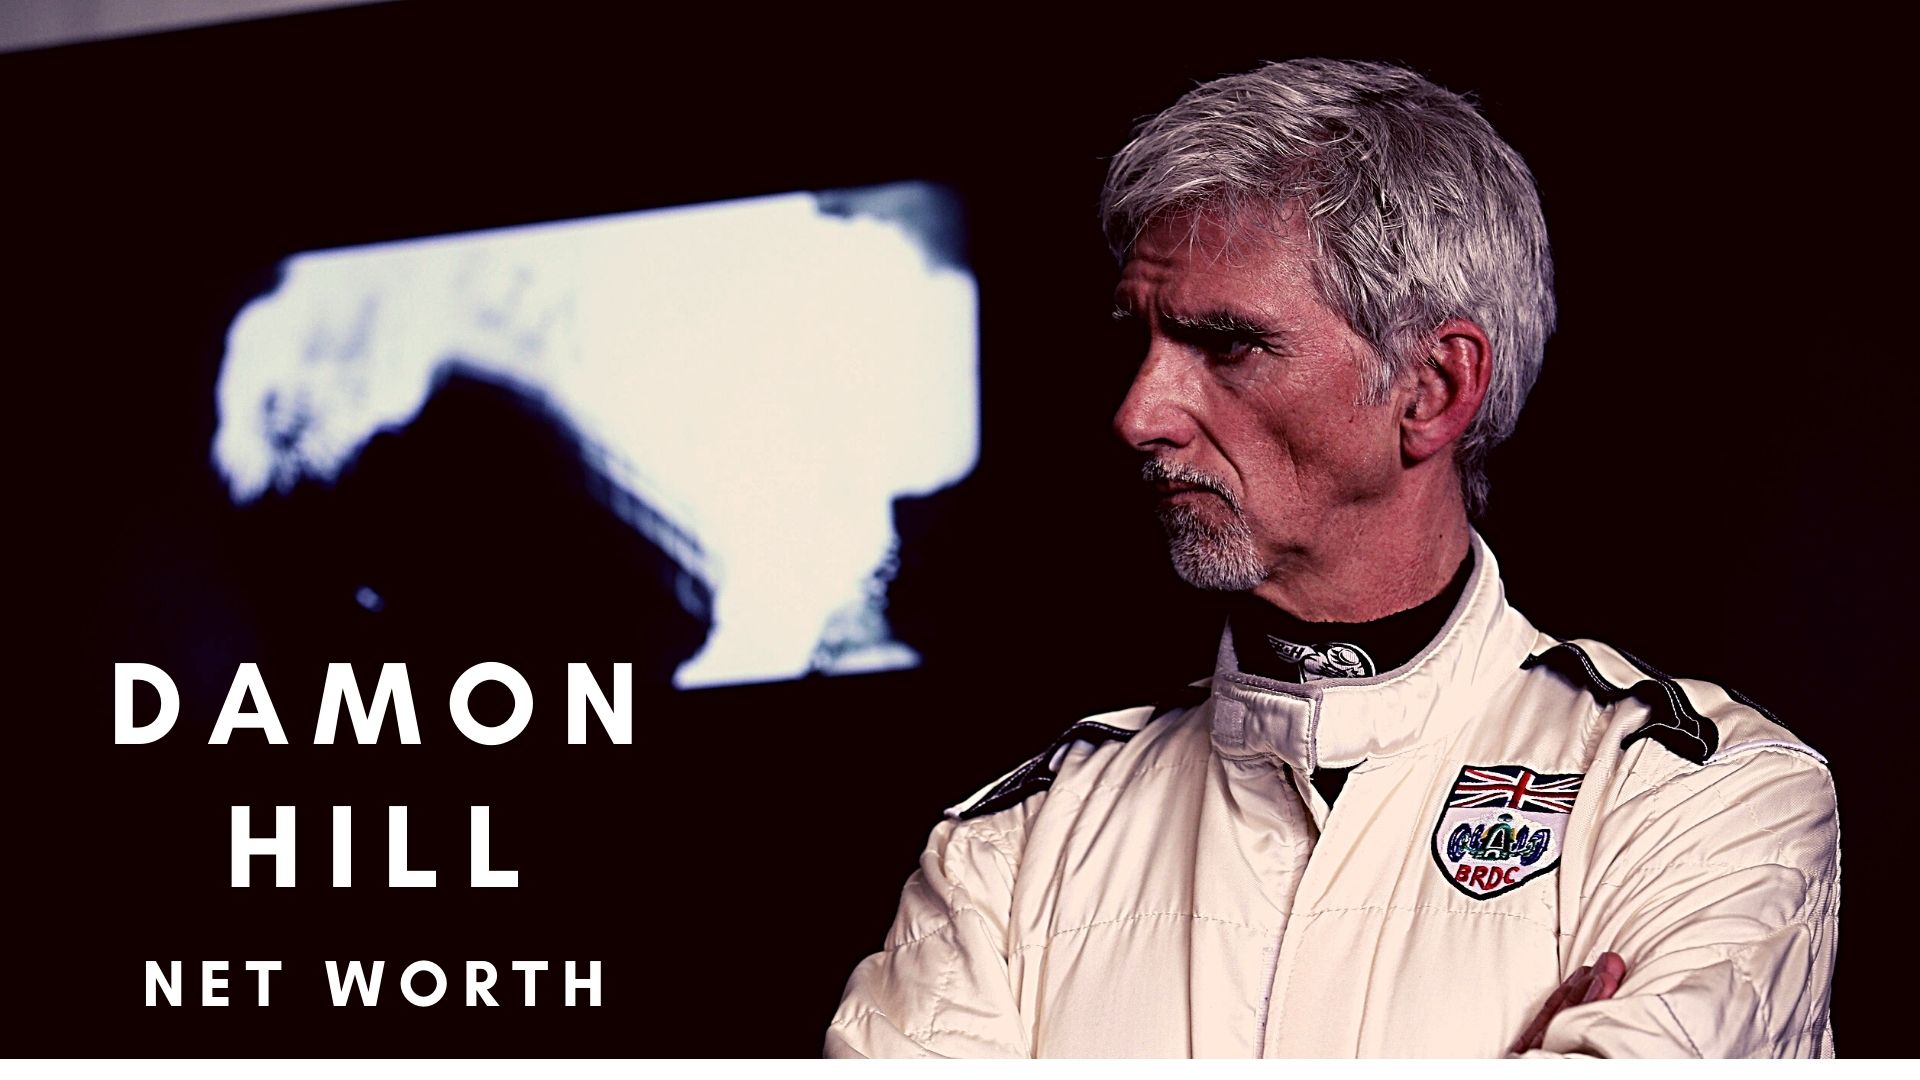 Damon Hill has won one F1 world championship